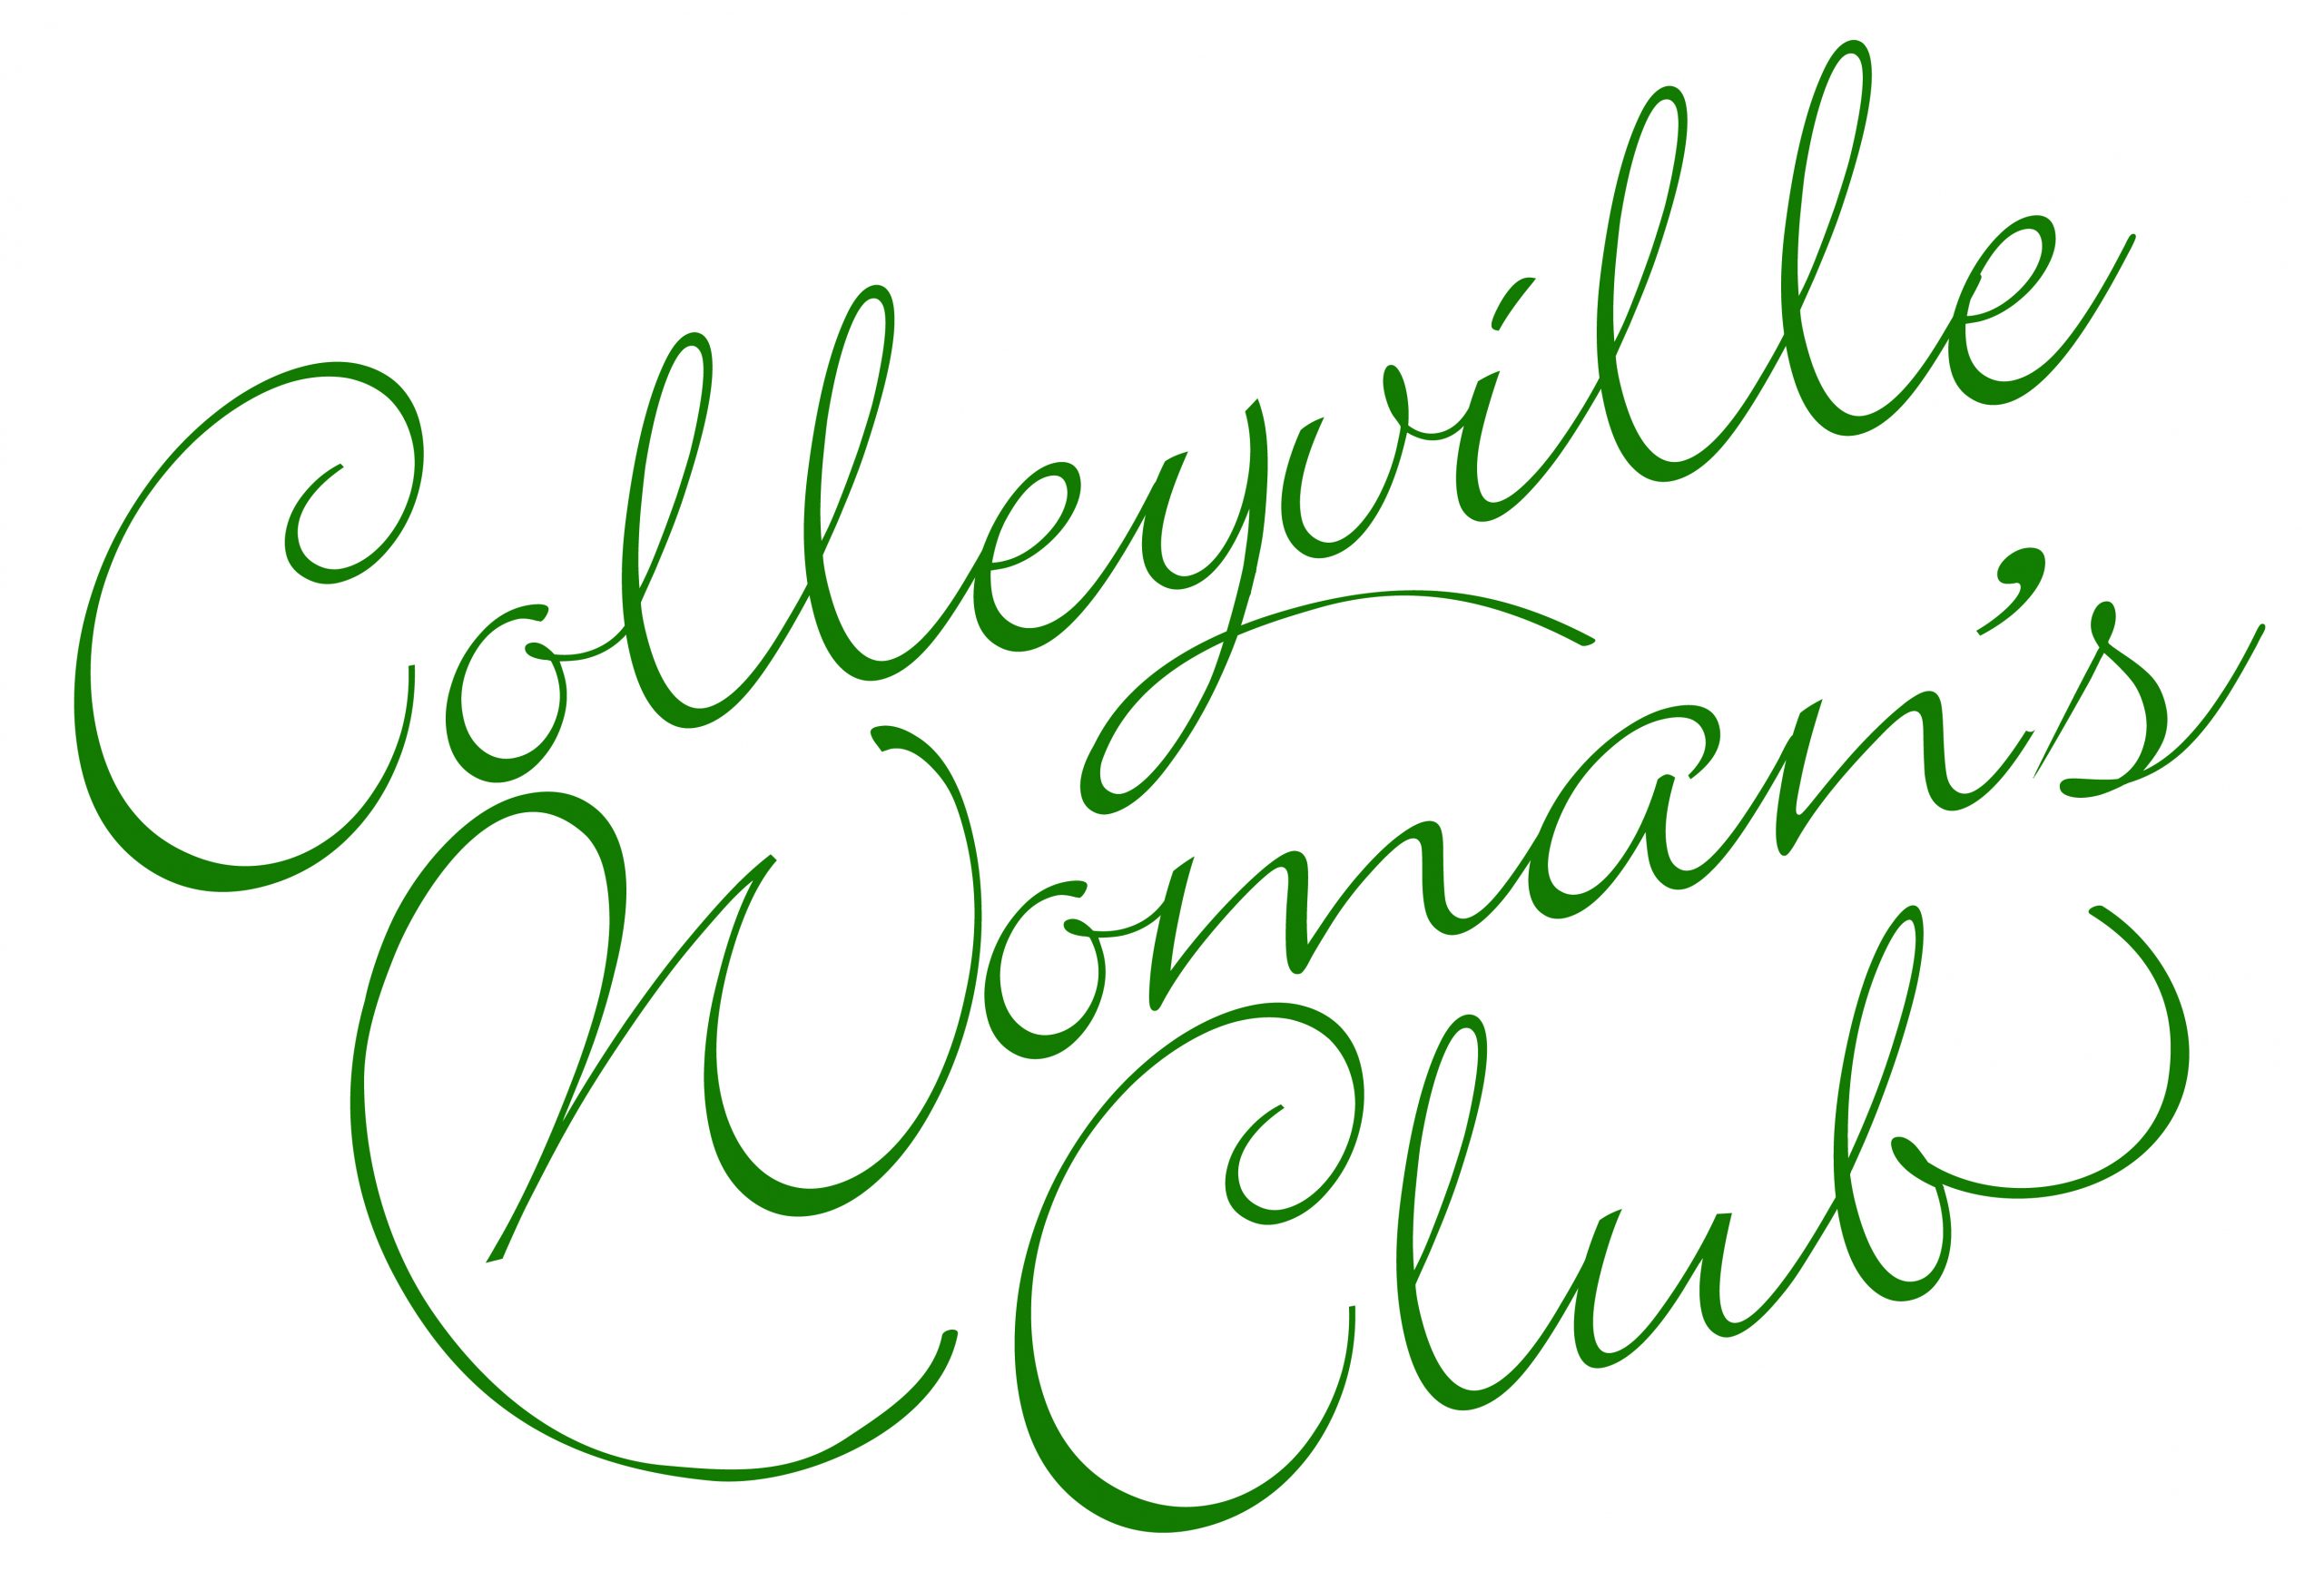 Colleyville Women’s Club